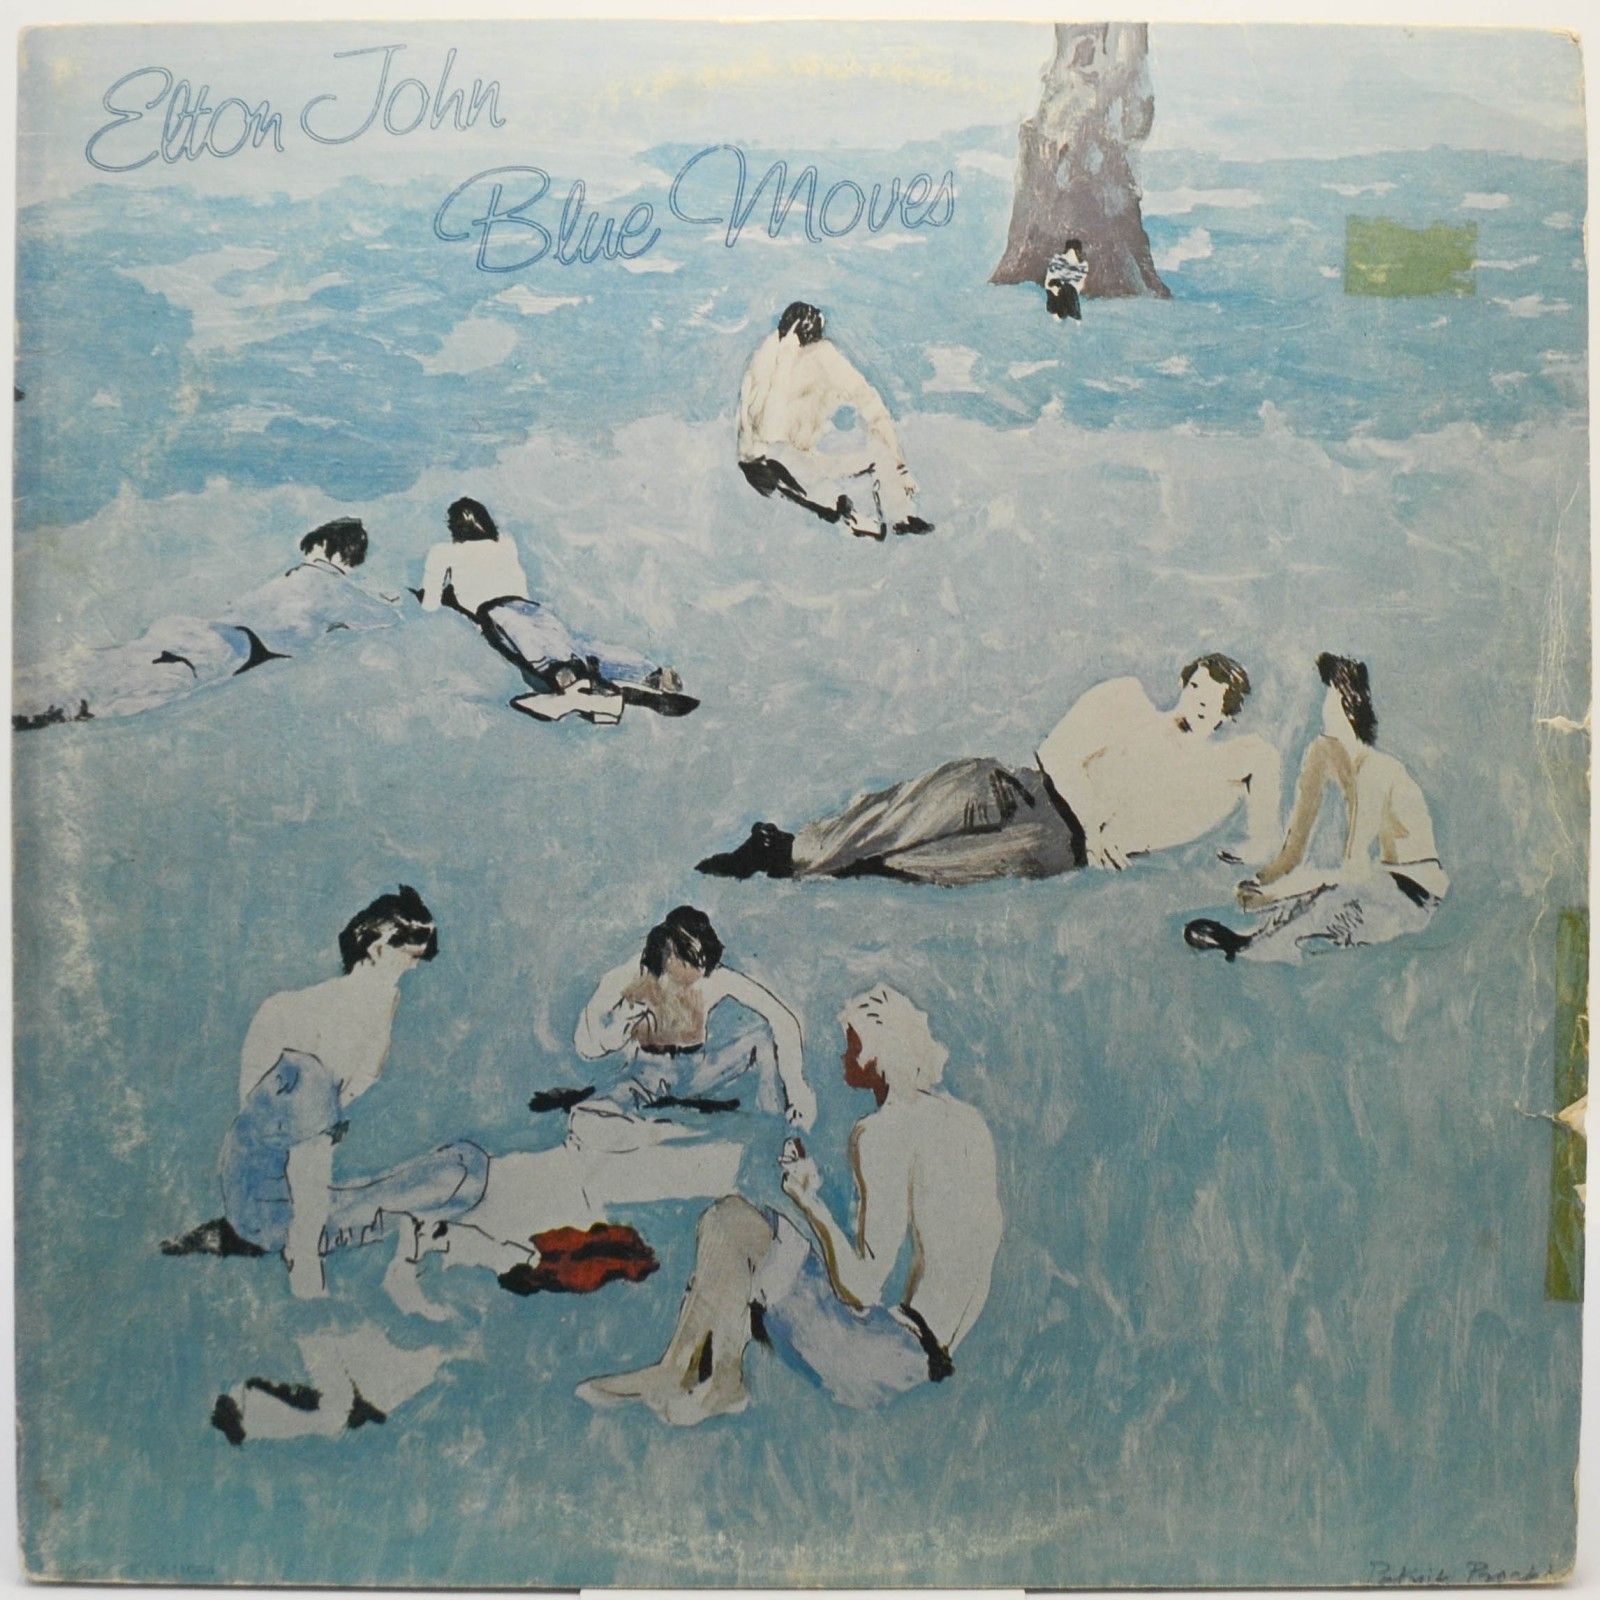 Elton John — Blue Moves (2LP), 1976